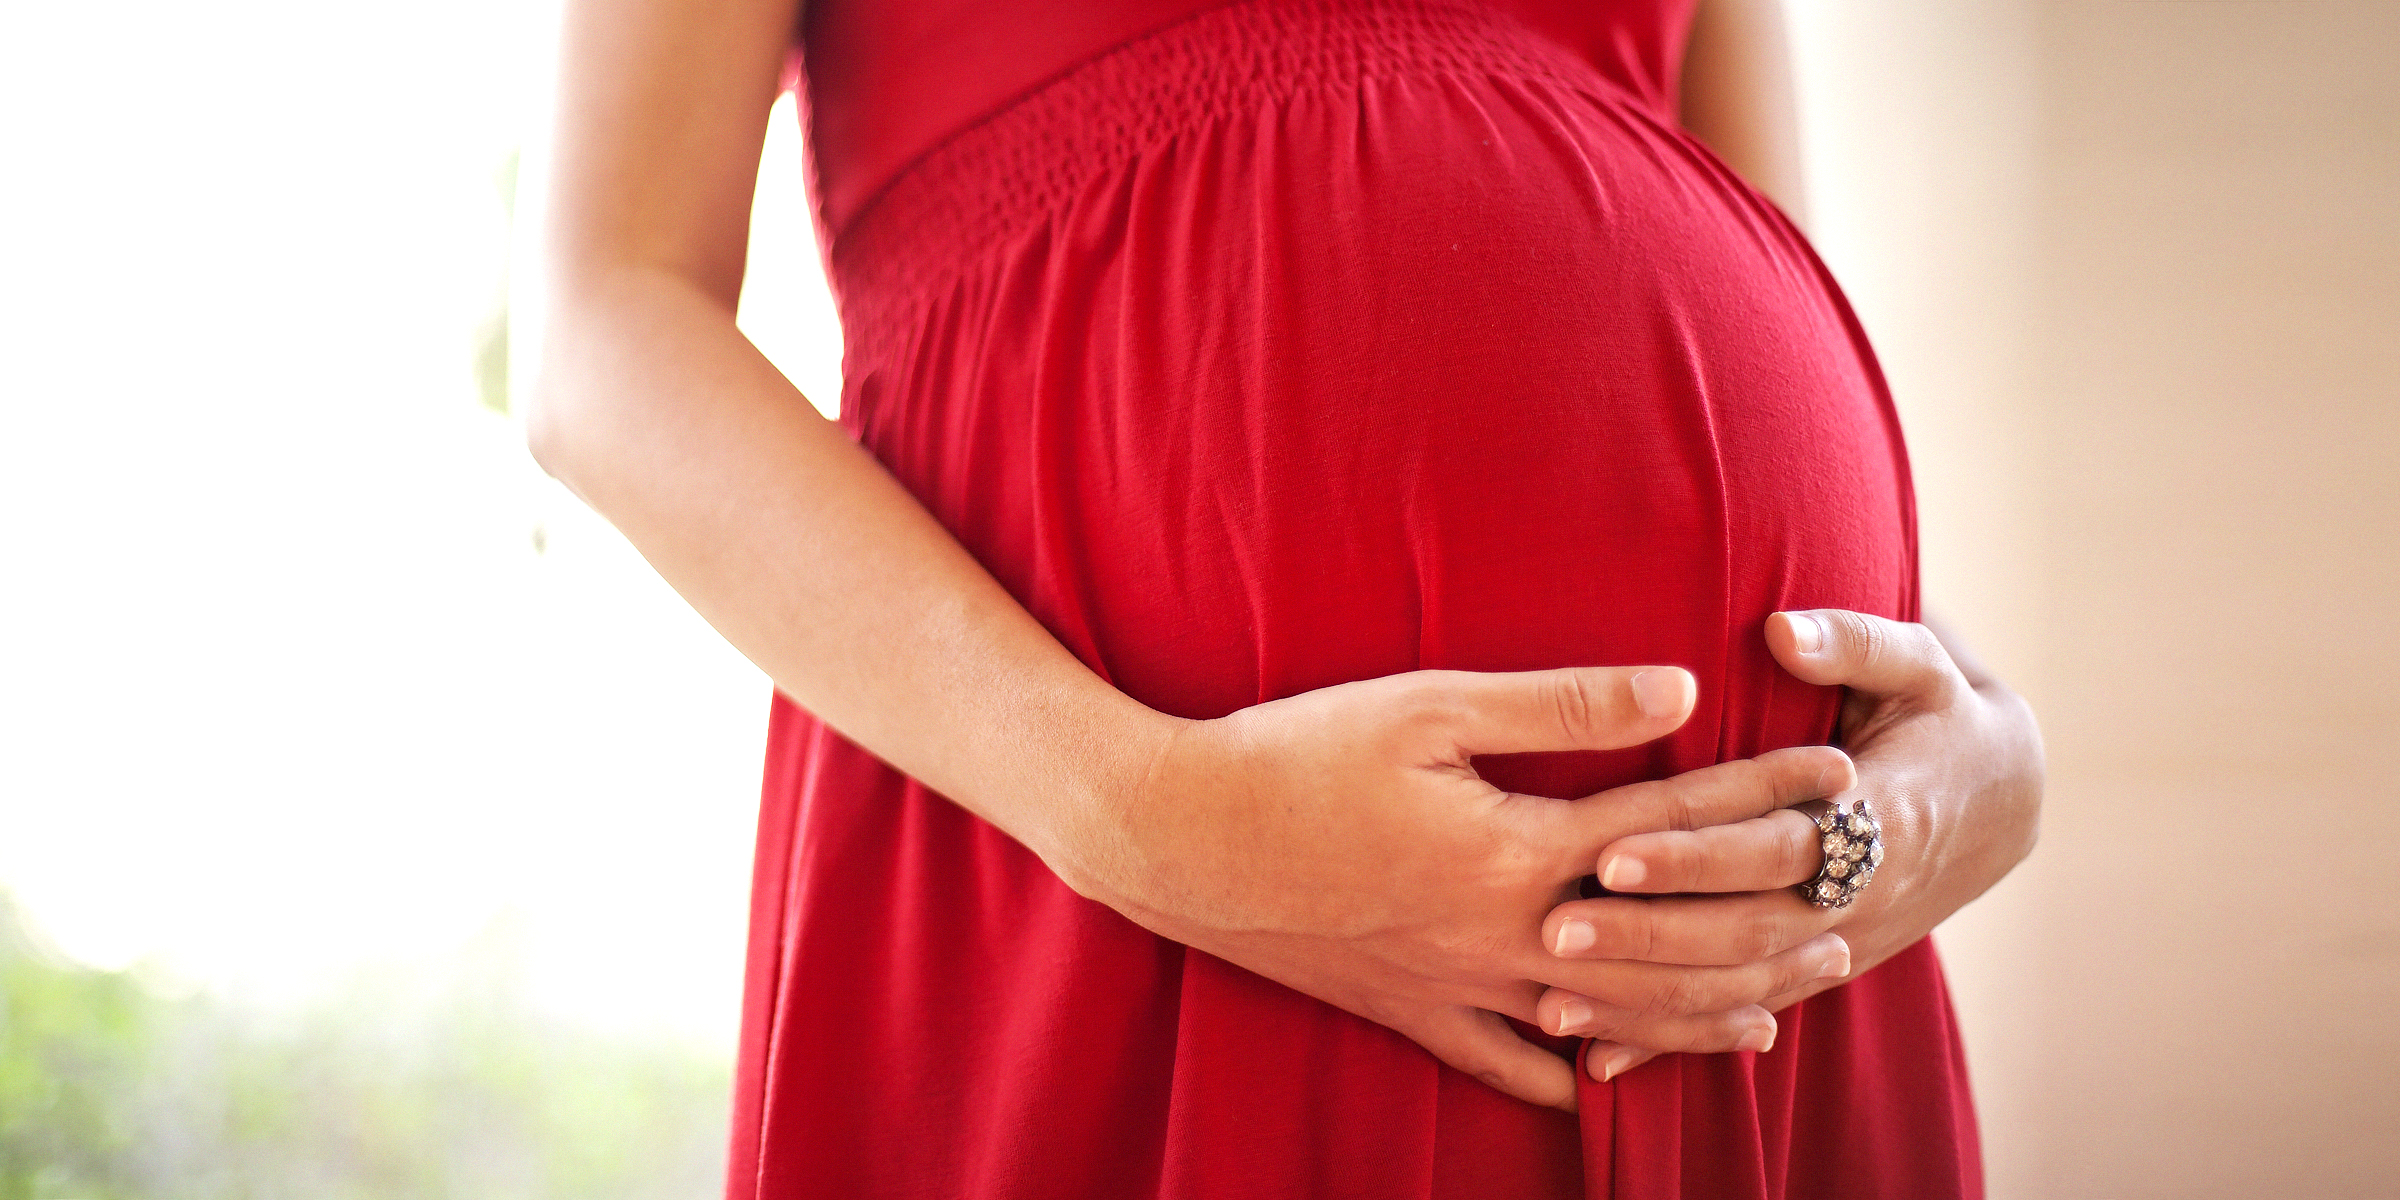 Femme enceinte se tenant le ventre | Source : Shutterstock